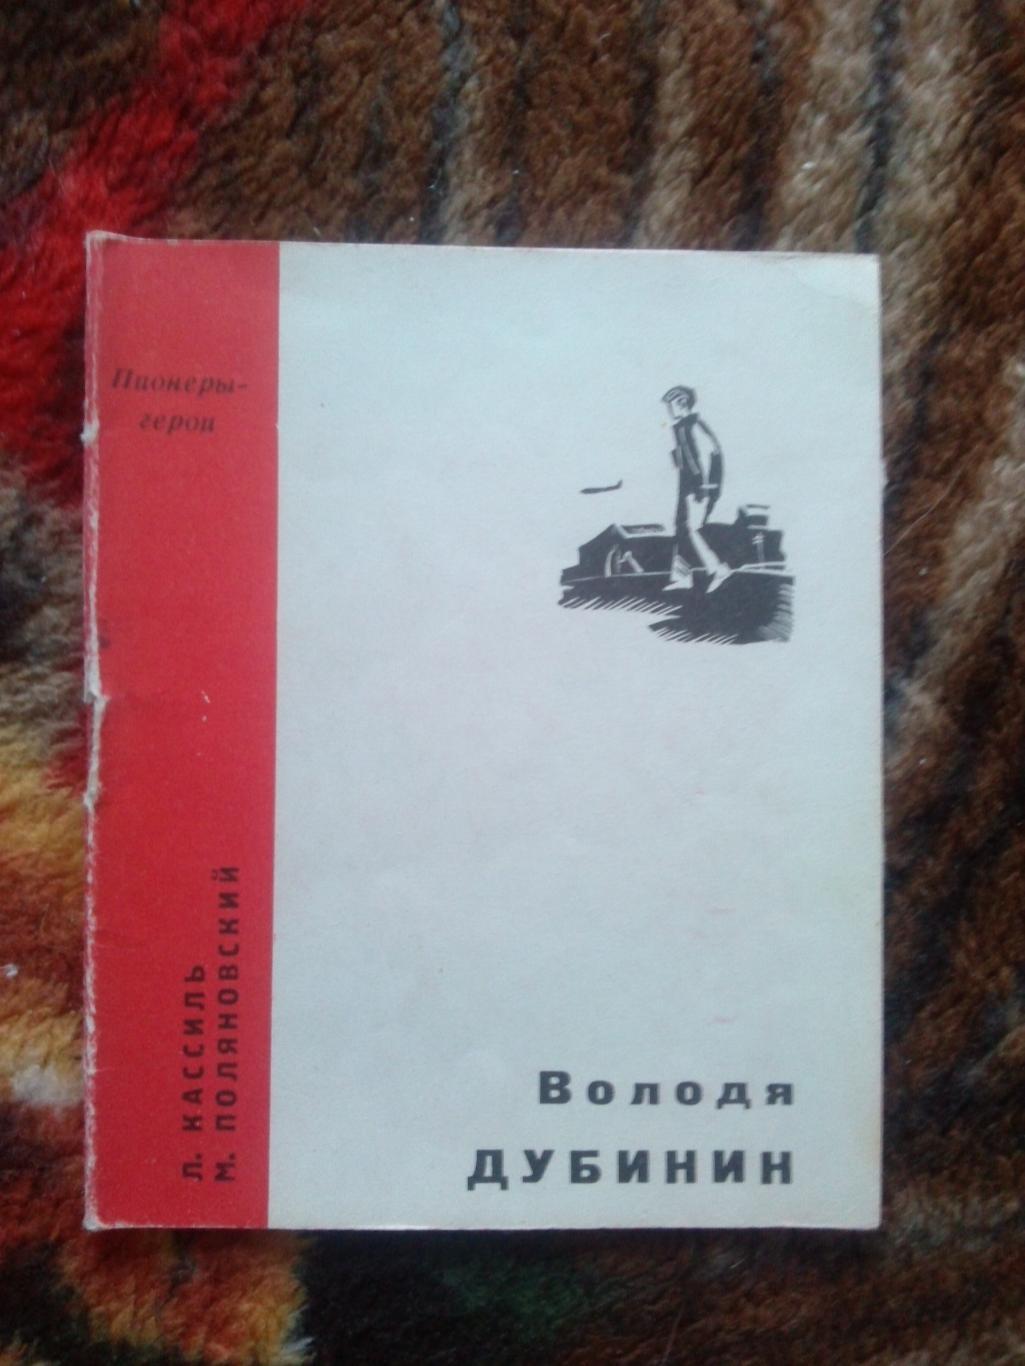 Пионеры-герои (Плакат + брошюра) 1967 г. Володя Дубинин (Пионер , агитация) 3